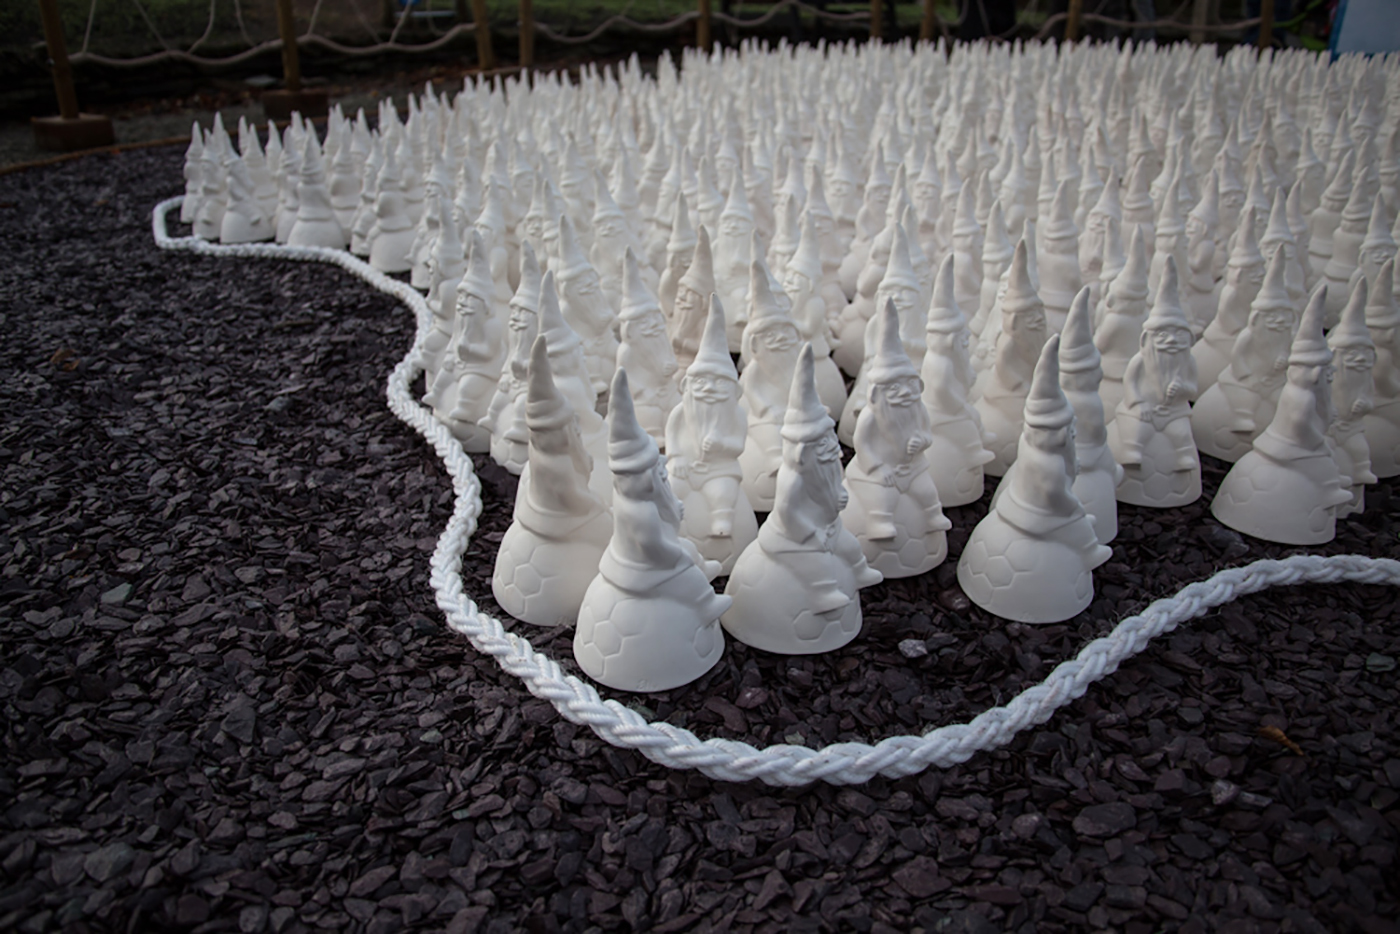 vast installation of garden gnomes